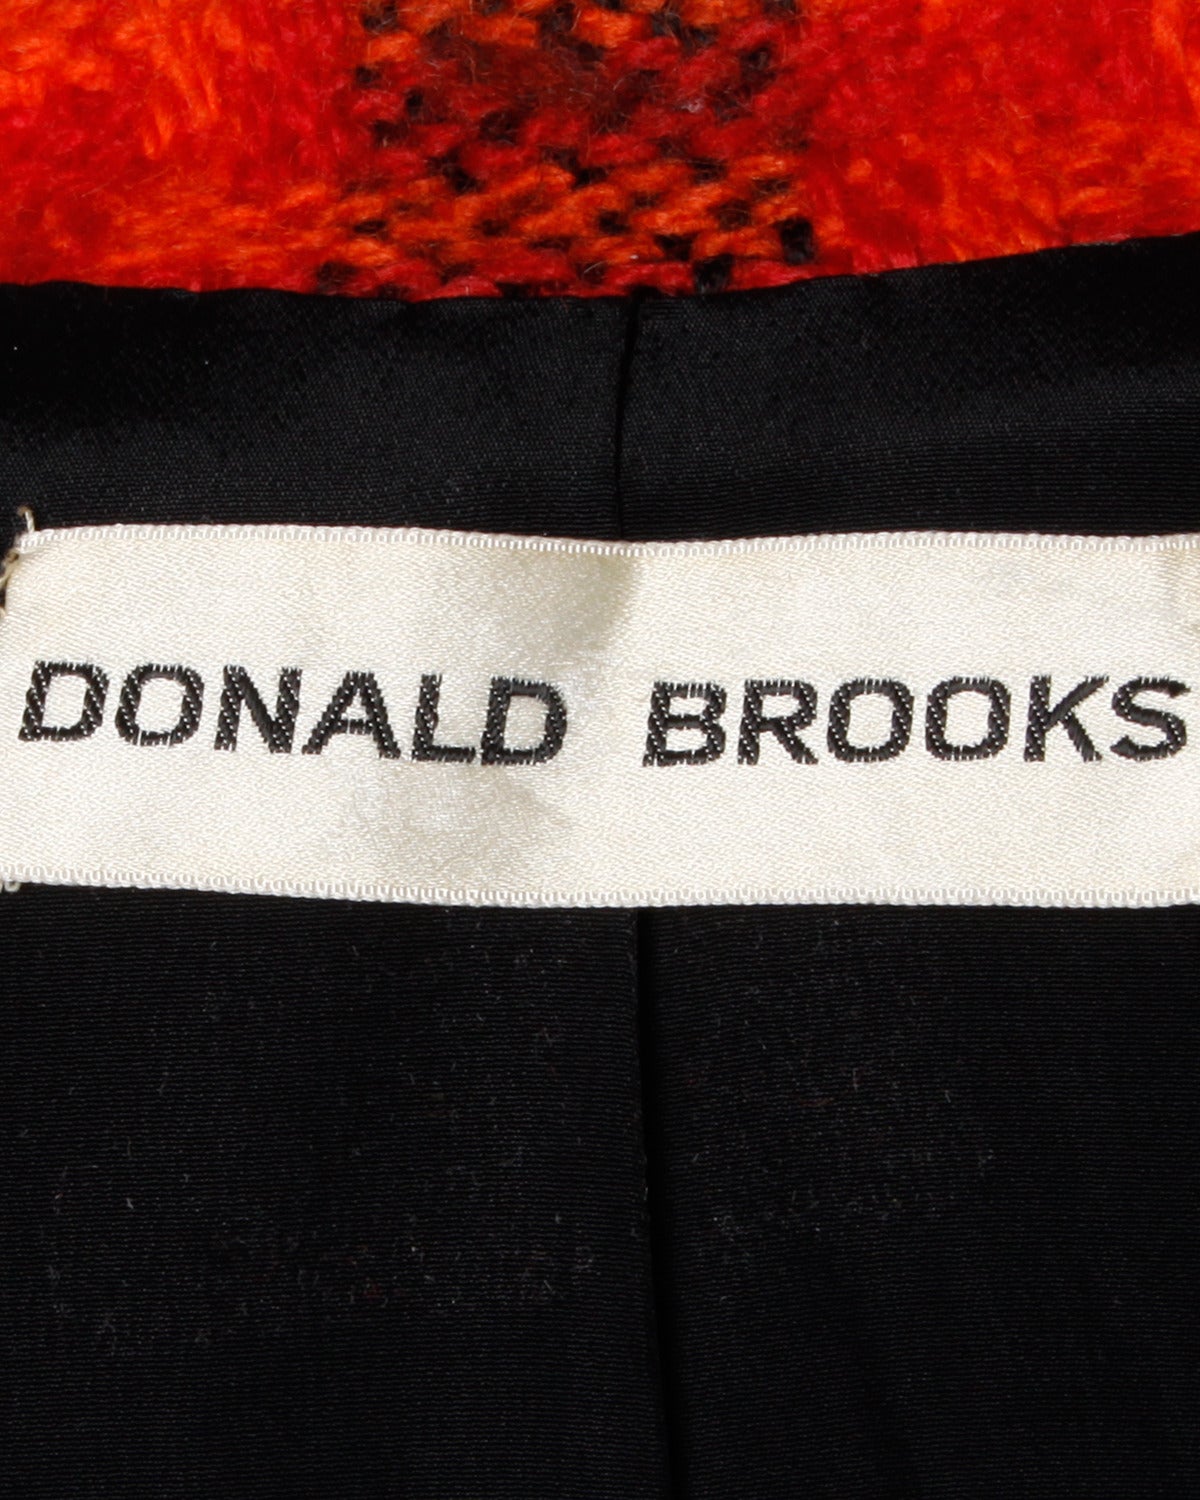 Wunderschönes tailliertes Karo-Sakko von Donald Brooks in einem lebhaften Karo. Bommelknöpfe aus schwarzem Leder und handgenähte Couture-Details. Mittelschwere Wolle.

Einzelheiten:

Vollständig